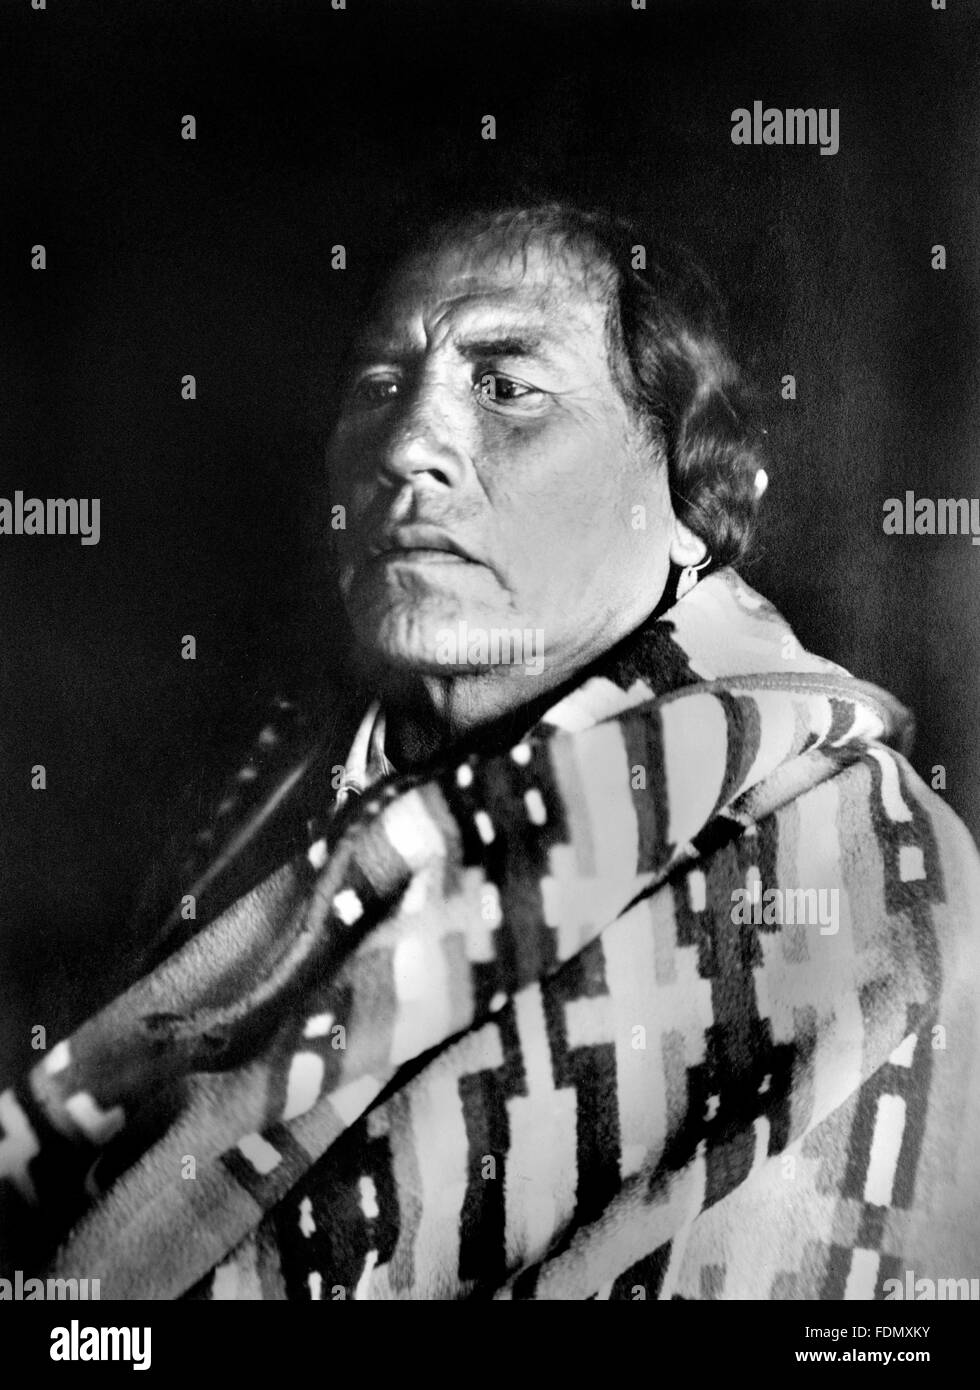 Ashishishe (ca. 1856 – 1923), bekannt als Curly (Curley), einen Crow-Scout in der US Army während der Sioux-Kriege, am besten bekannt für eine der wenigen Überlebenden auf der Seite der Vereinigten Staaten an die Schlacht von Little Bighorn. Foto c.1907 von Richard Throssel. Stockfoto